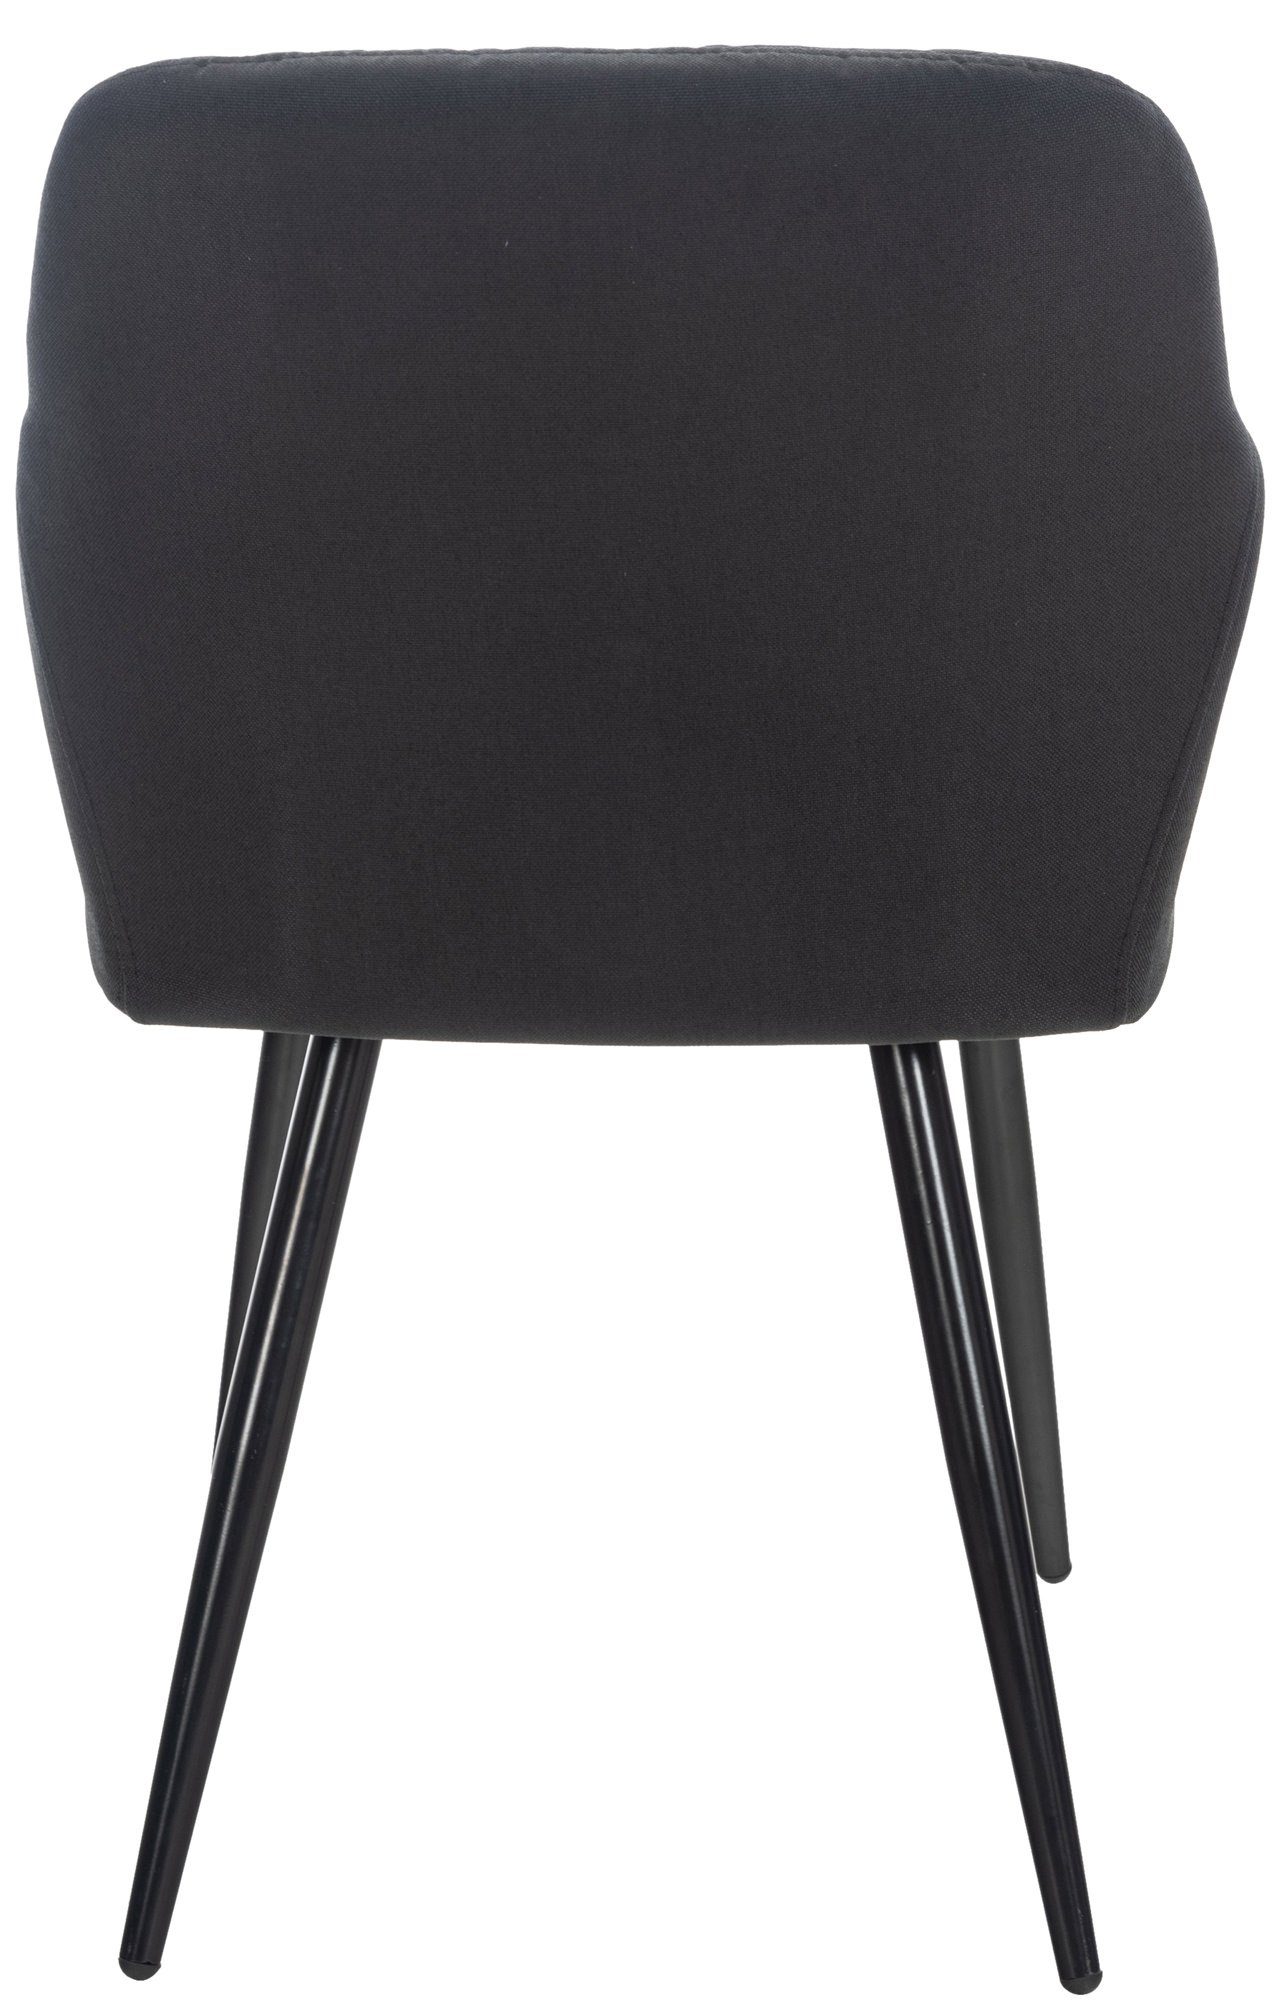 Wohnzimmerstuhl Sitzfläche - mit TPFLiving Polsterstuhl), - schwarz Esstischstuhl - Metall hochwertig Esszimmerstuhl Stoff Gestell: Shyva schwarz (Küchenstuhl Sitzfläche: - - Konferenzstuhl gepolsterter